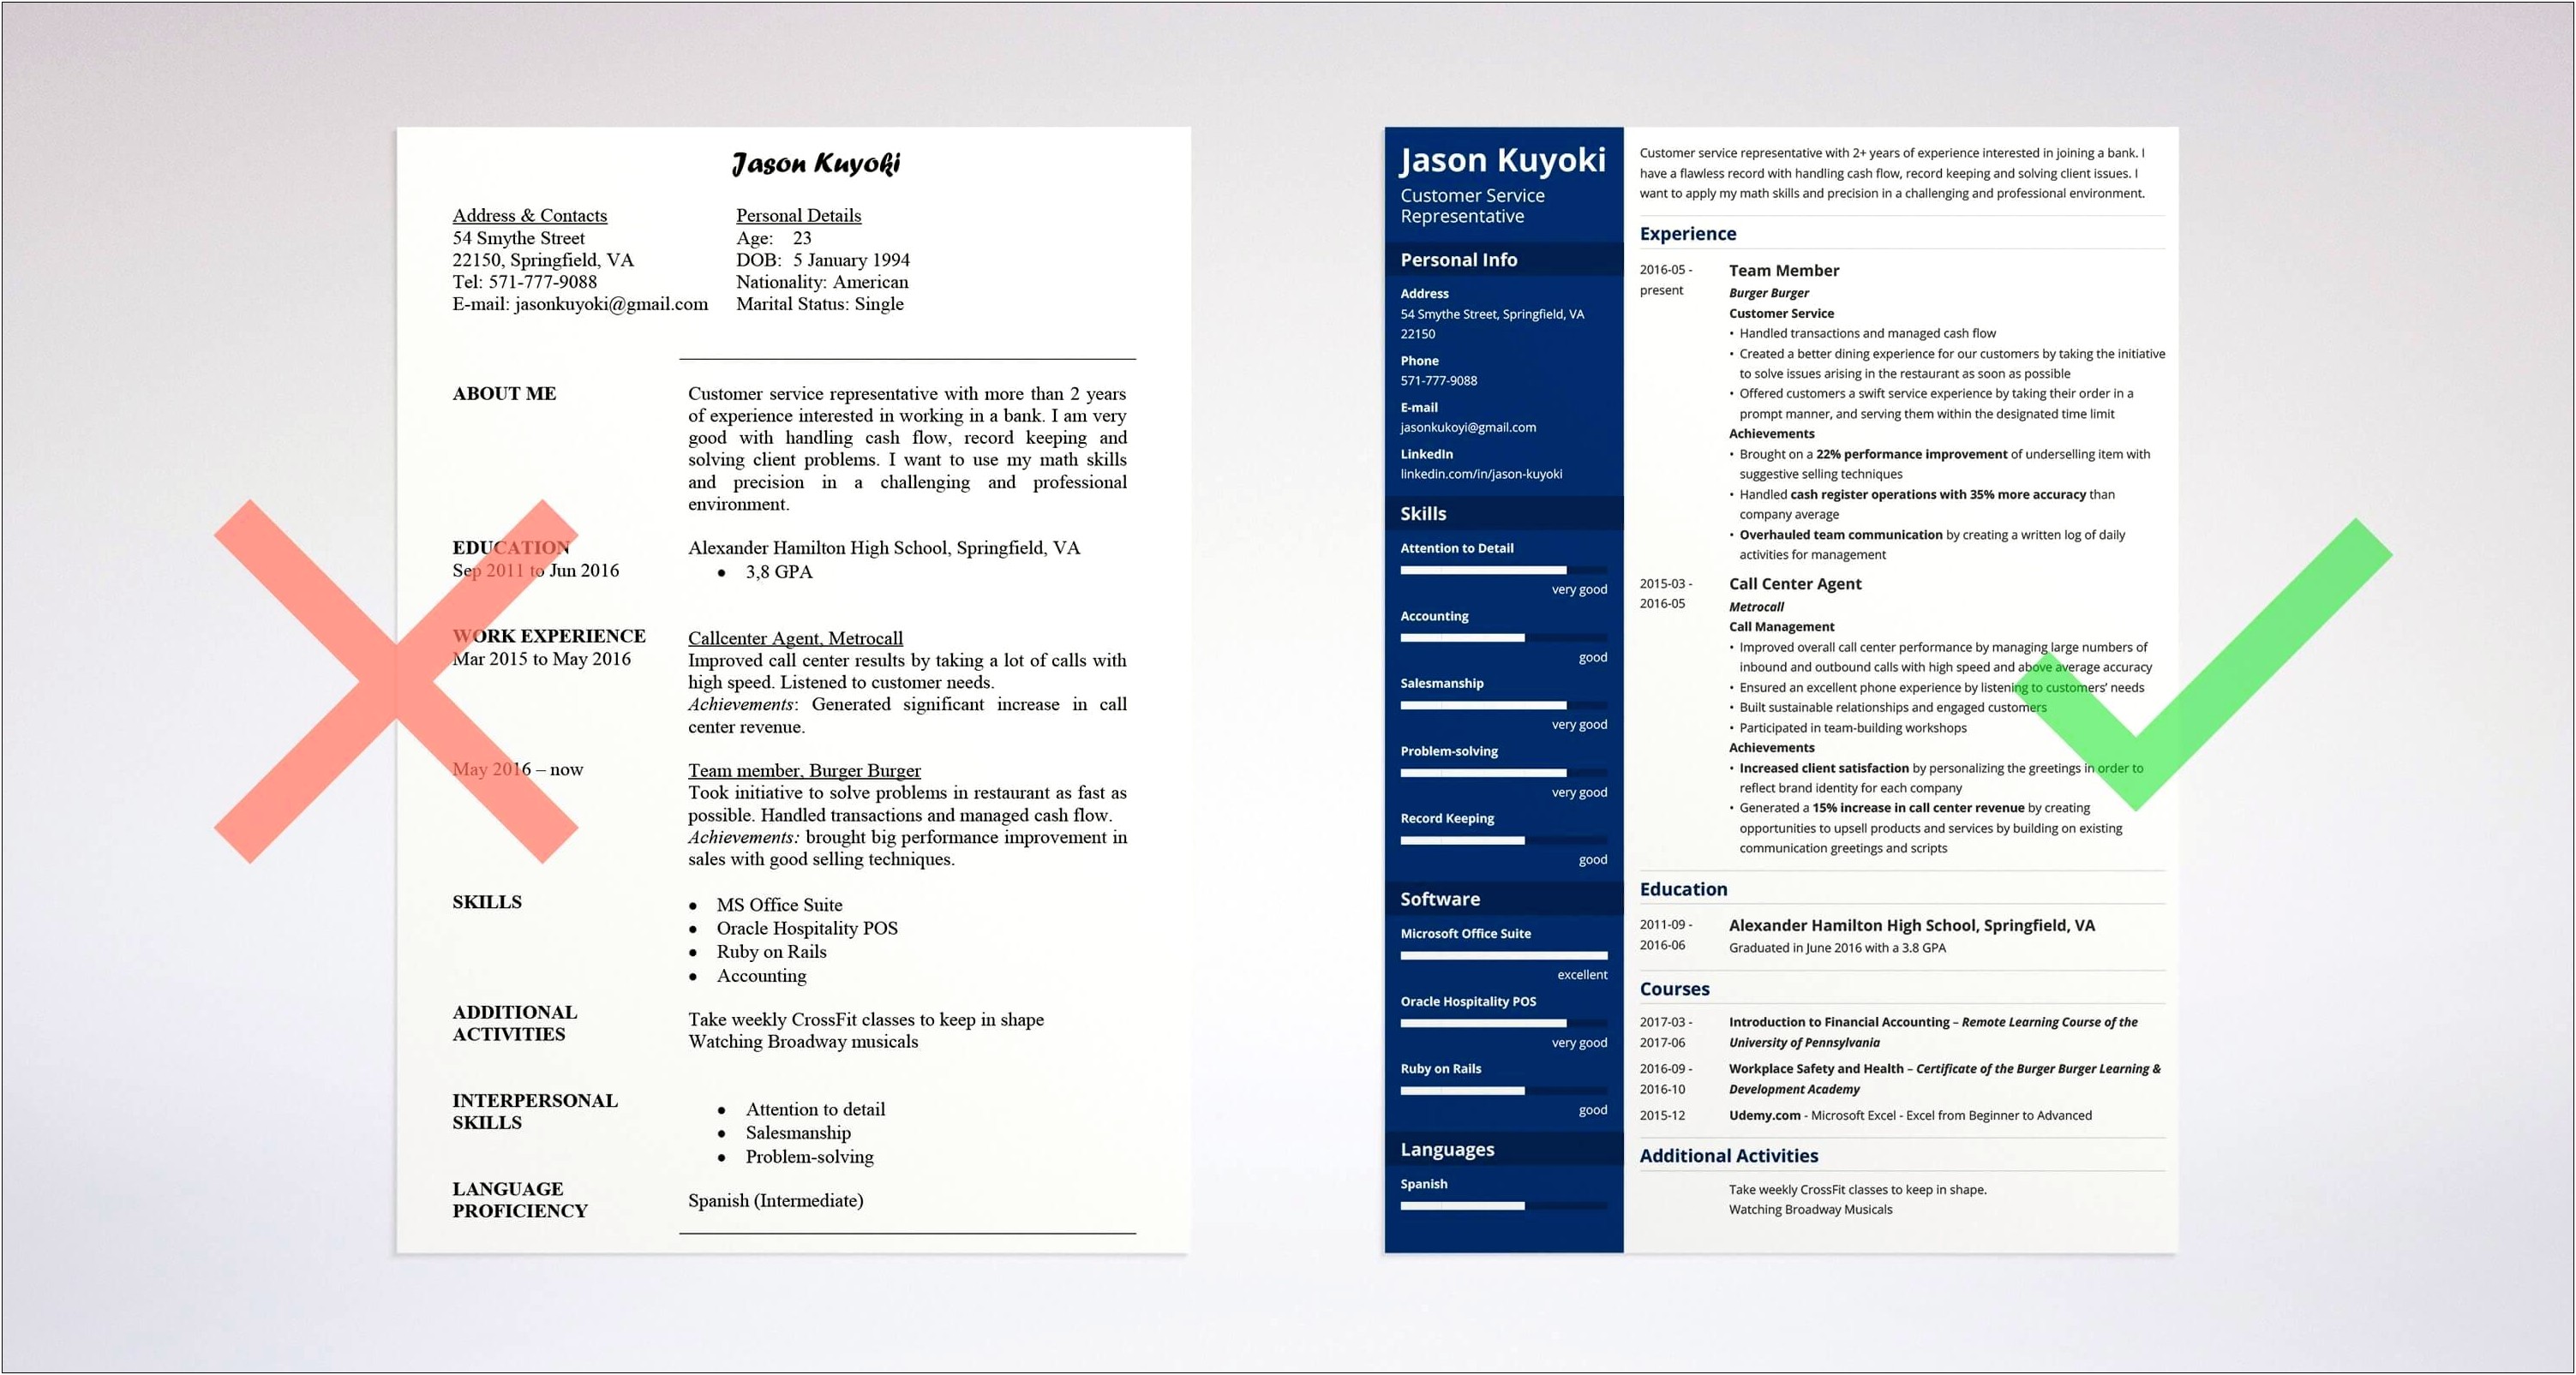 Bank Verifictation Job Description For Resume